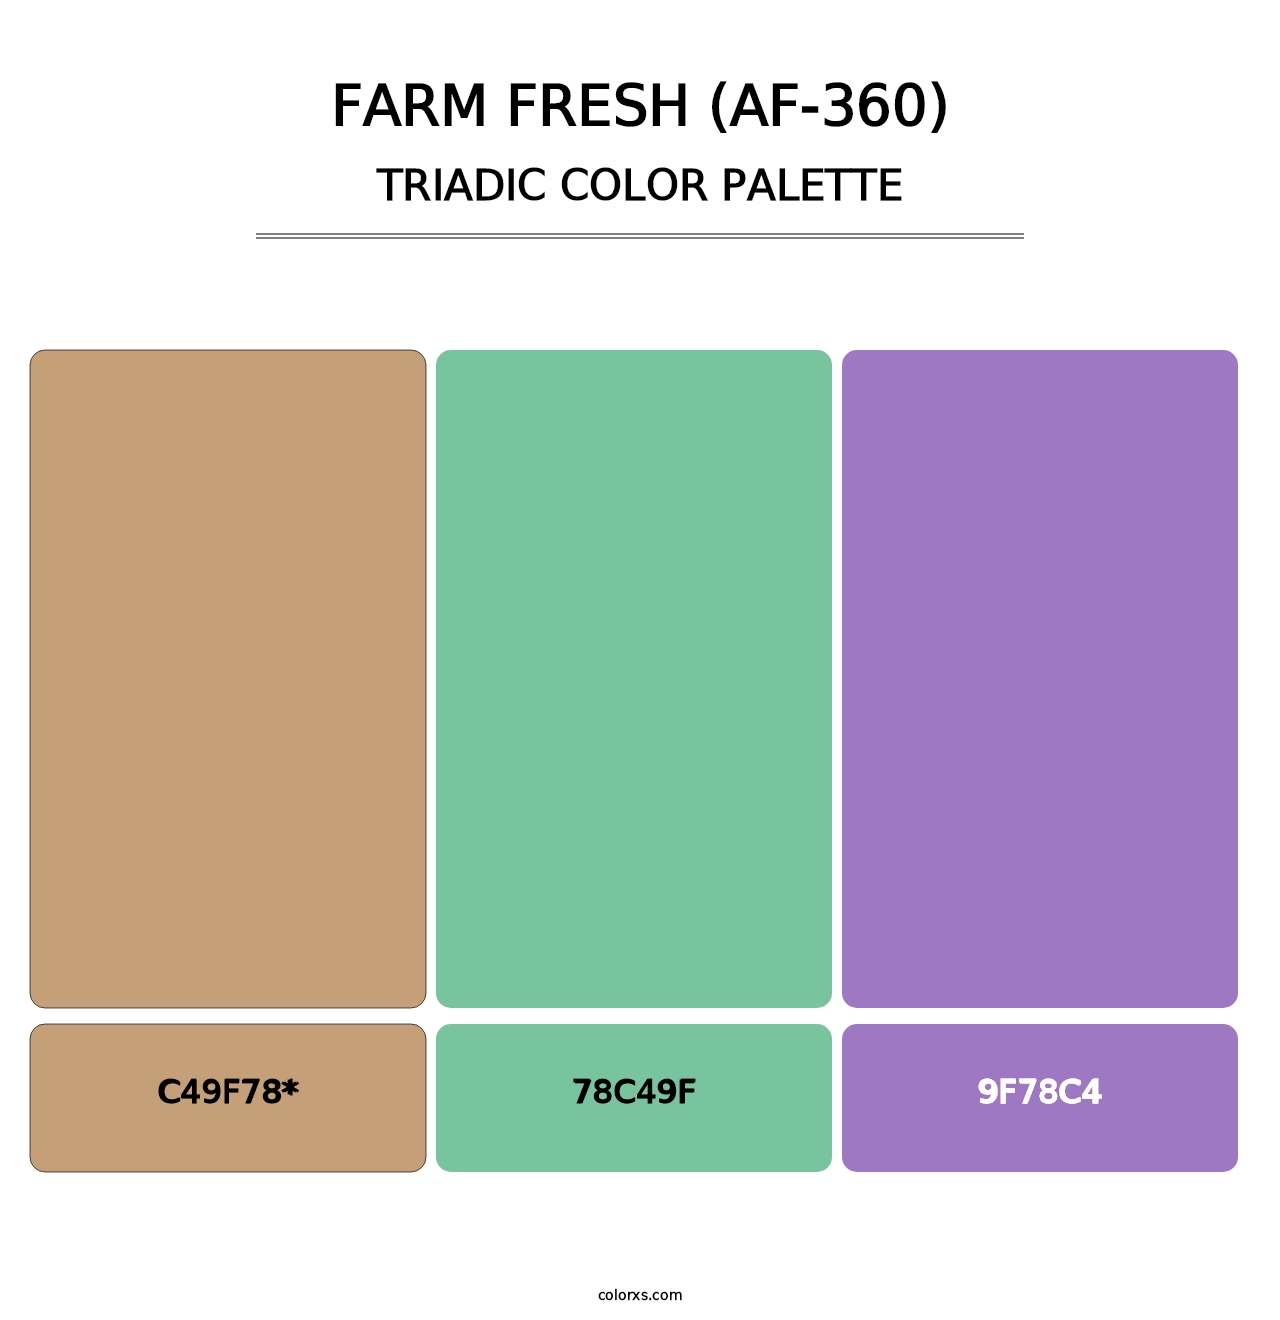 Farm Fresh (AF-360) - Triadic Color Palette